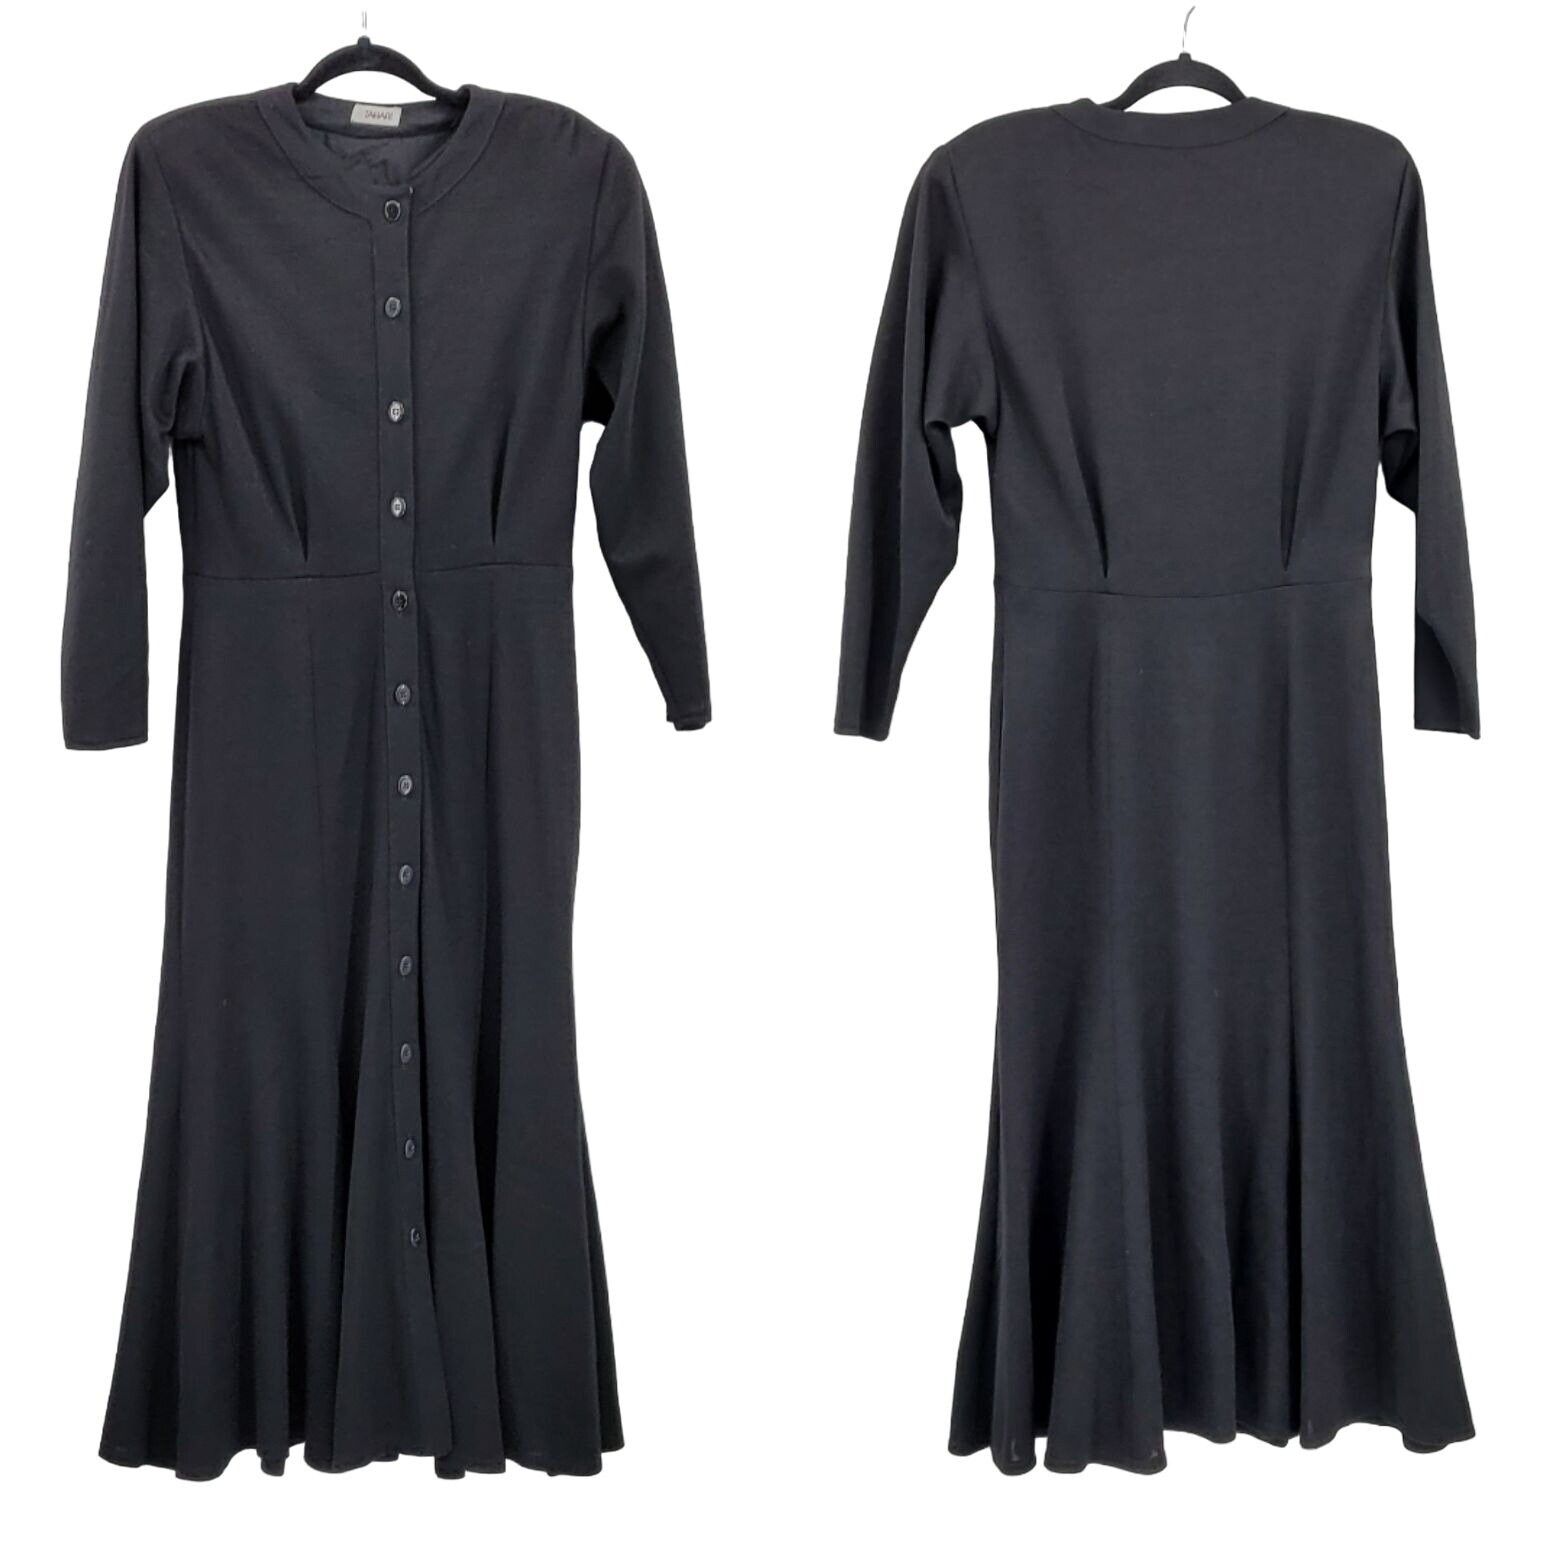 Elie Tahari 80s Tahari Dress Wool Knit Modest Long Sleeve Maxi Black Size M / US 6-8 / IT 42-44 - 1 Preview